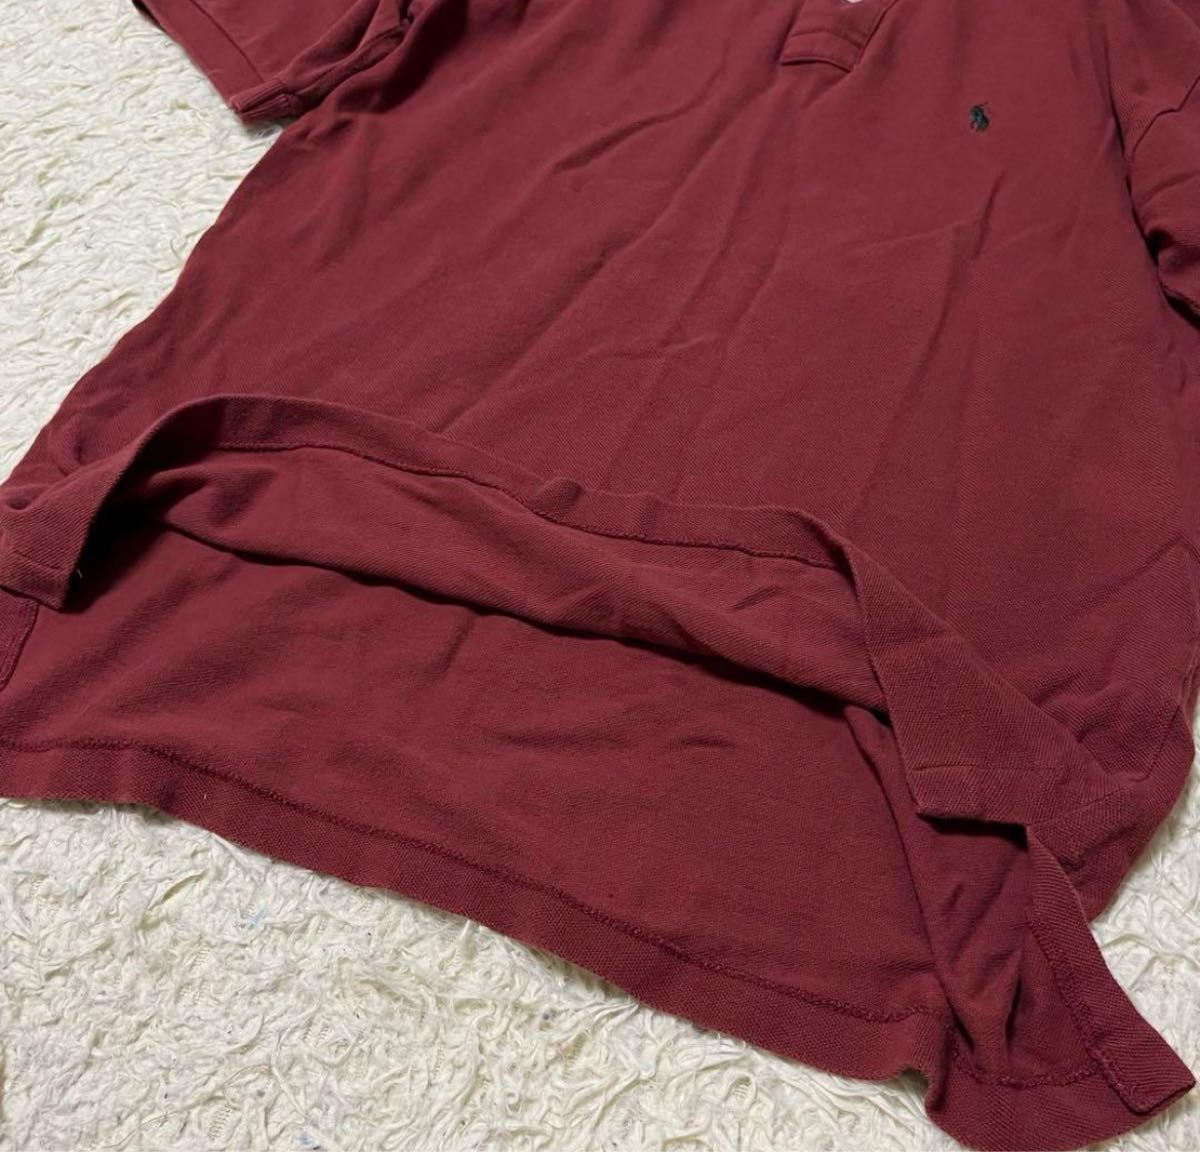 Polo Ralph Lauren ポロラルフローレン ポロシャツ 半袖 ポニー 刺繍 綿 コットン 茶系 L 大きいサイズ